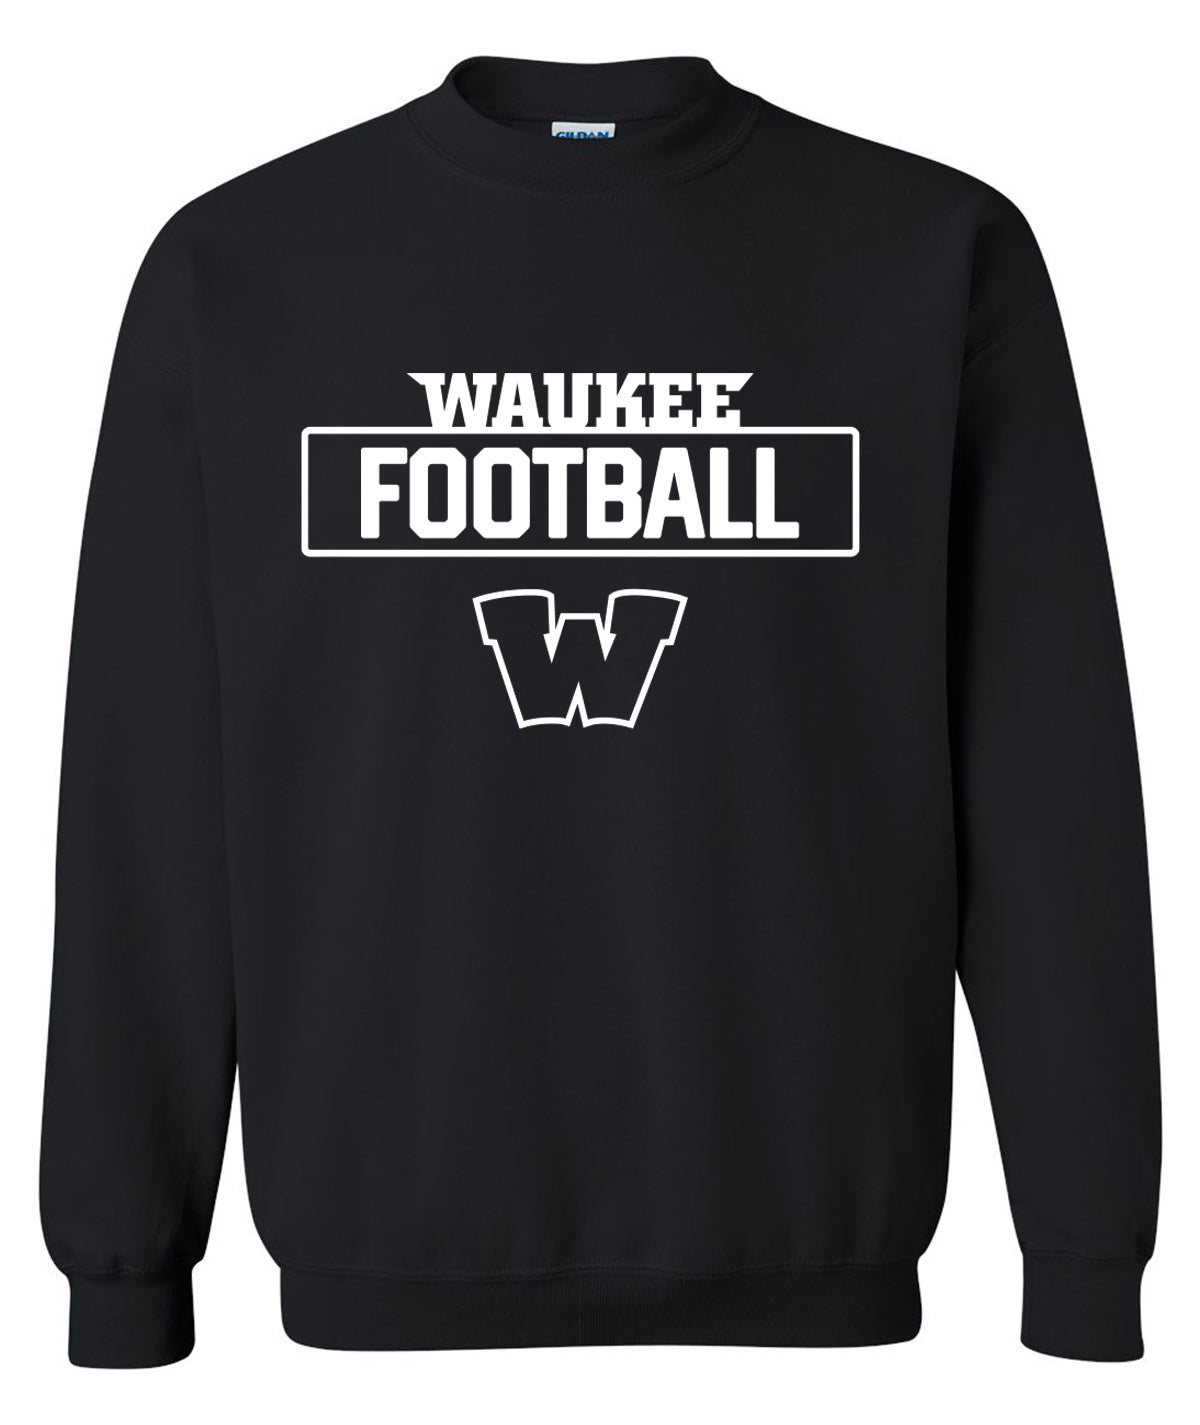 Warriors Football Crewneck Sweatshirt